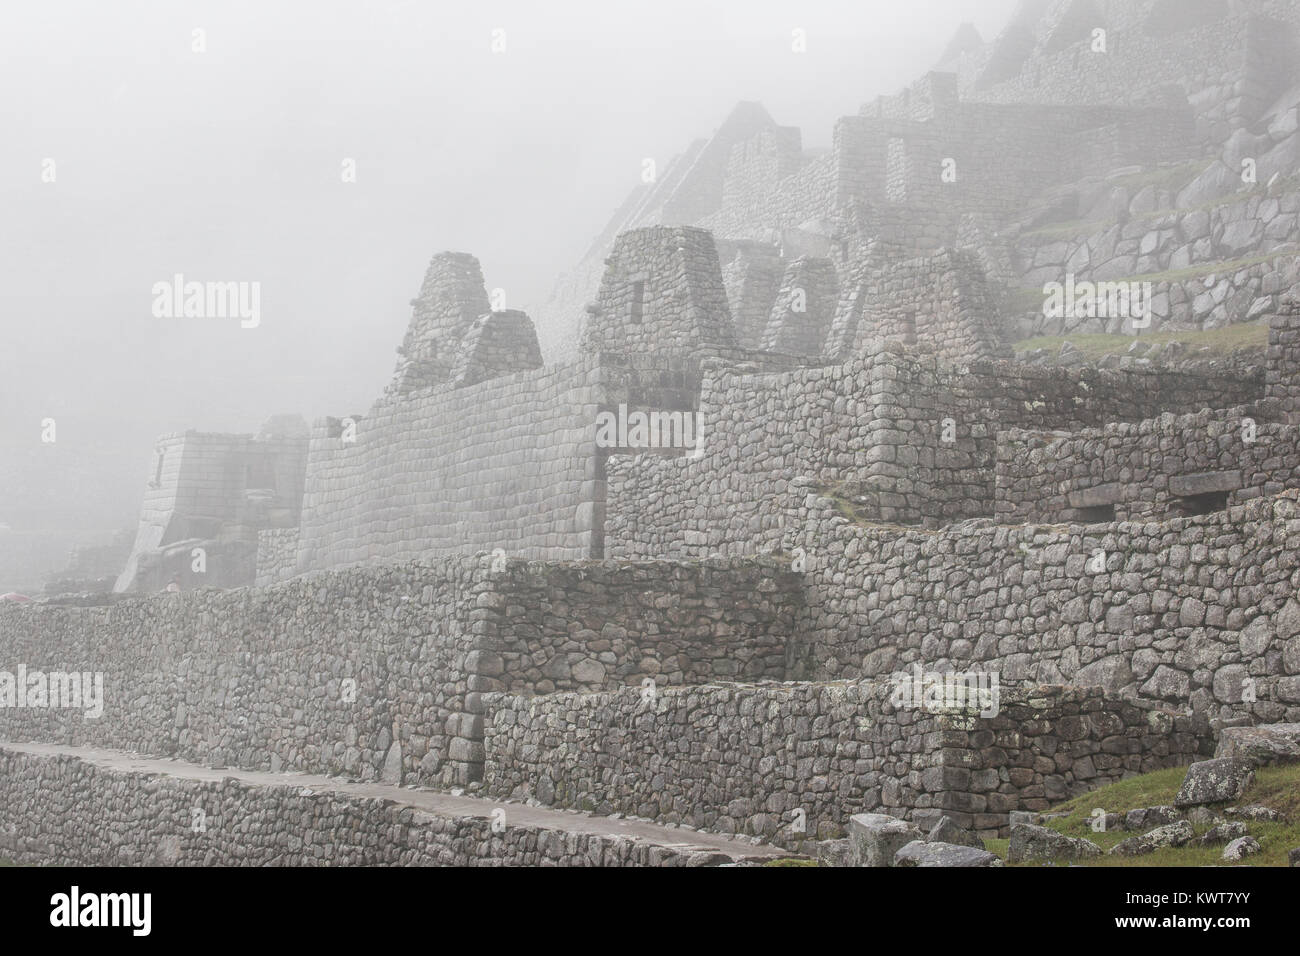 La brume enveloppe la vide pacifique ruines de Machu Picchu, au Pérou. Banque D'Images